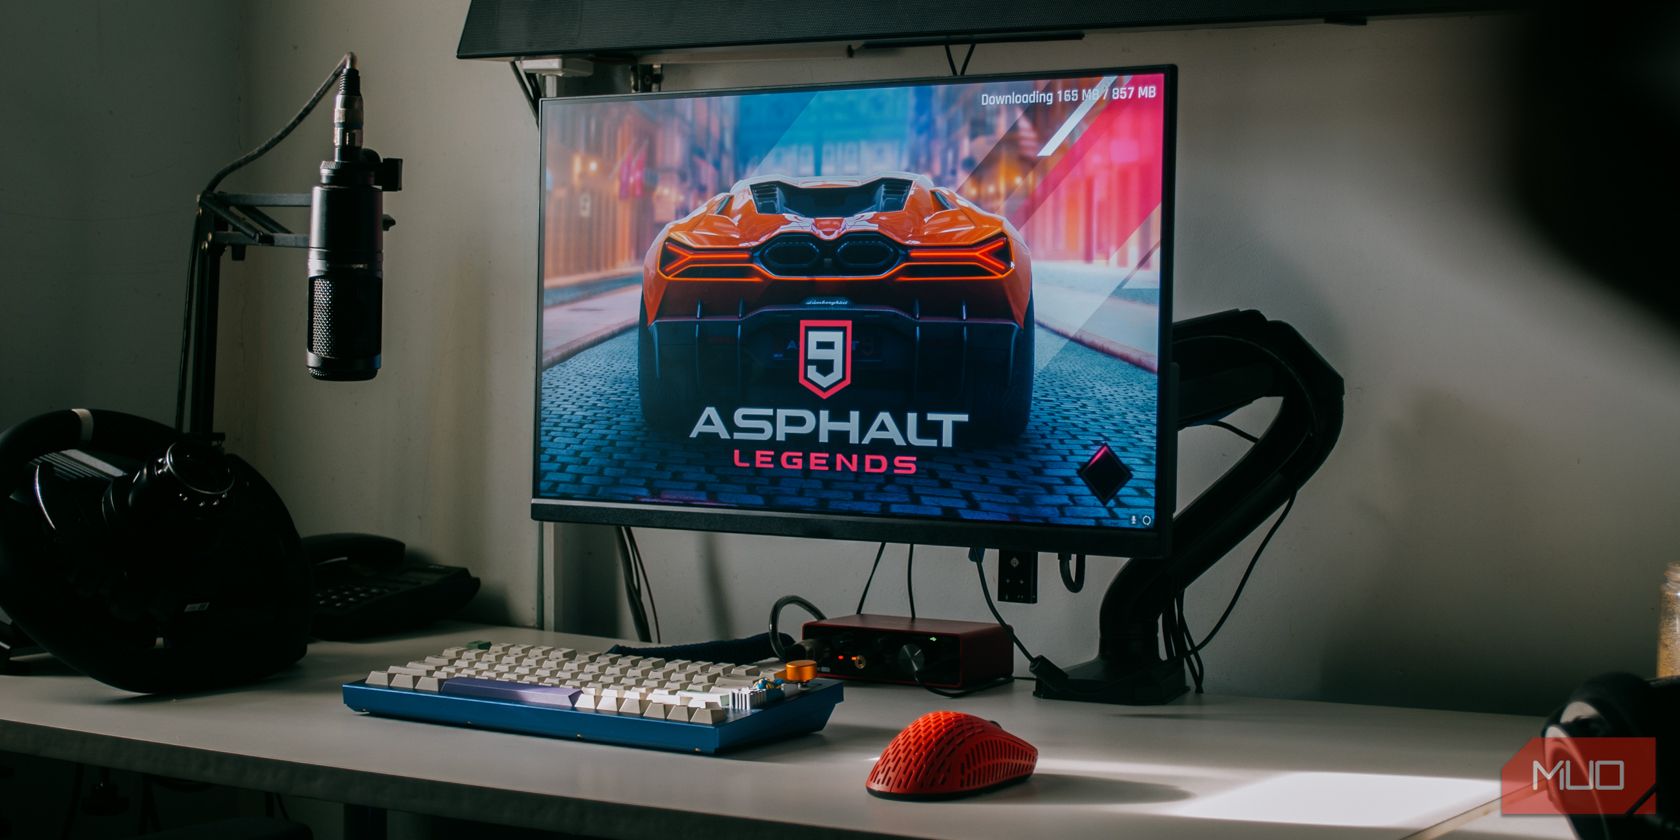 Download and Play Asphalt 9: Legends on PC & Mac (Emulator)